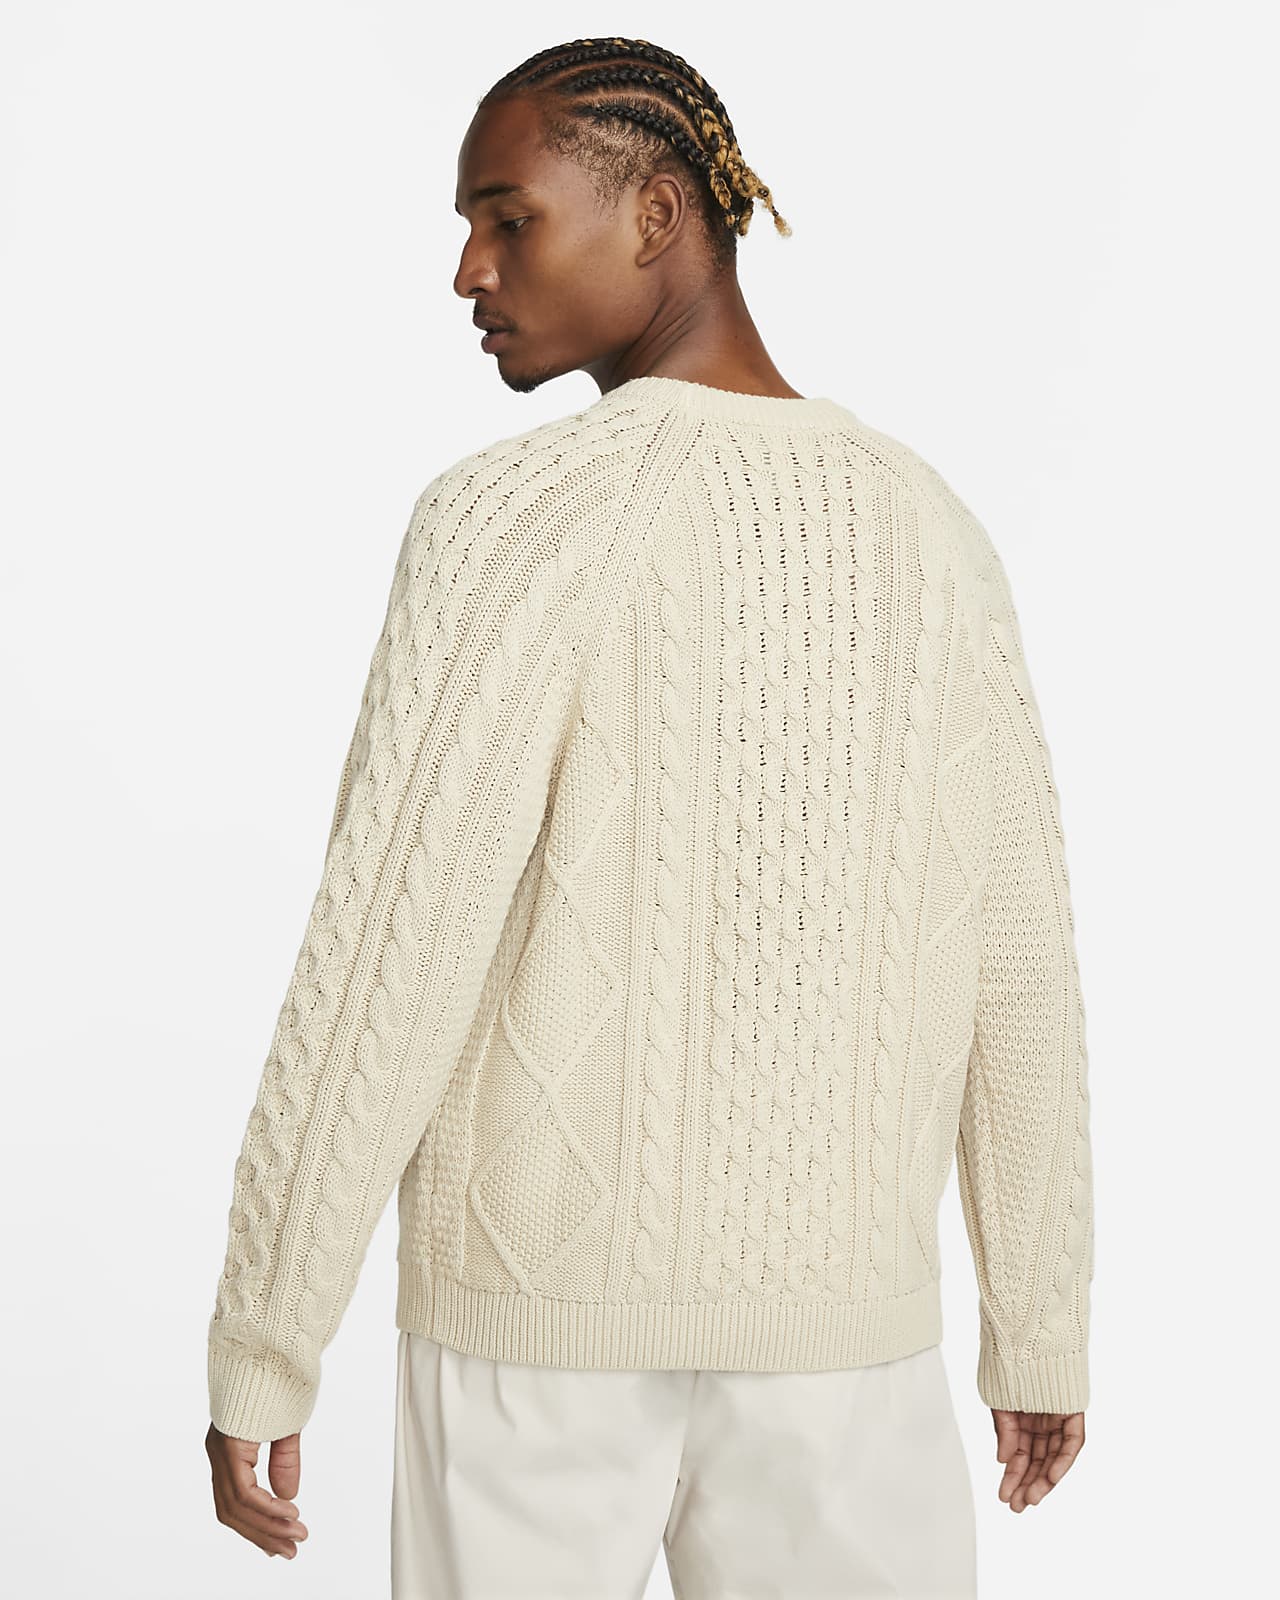 Suéter de cuello alto de tejido Knit trenzado para hombre Nike Life